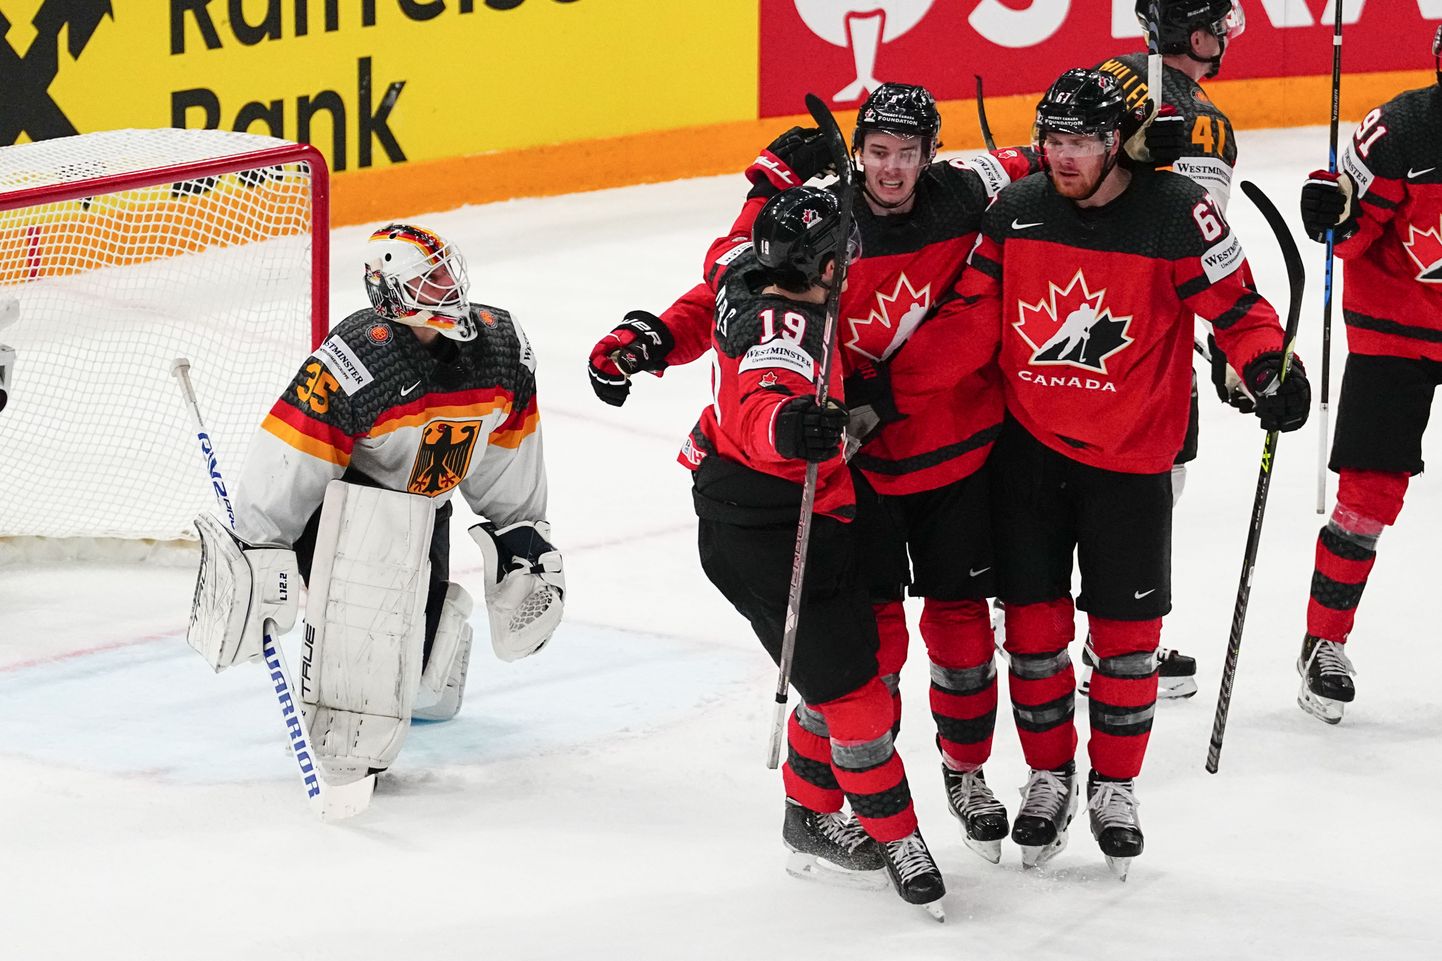 Kanada mehed MM-finaalis väravat tähistamas.